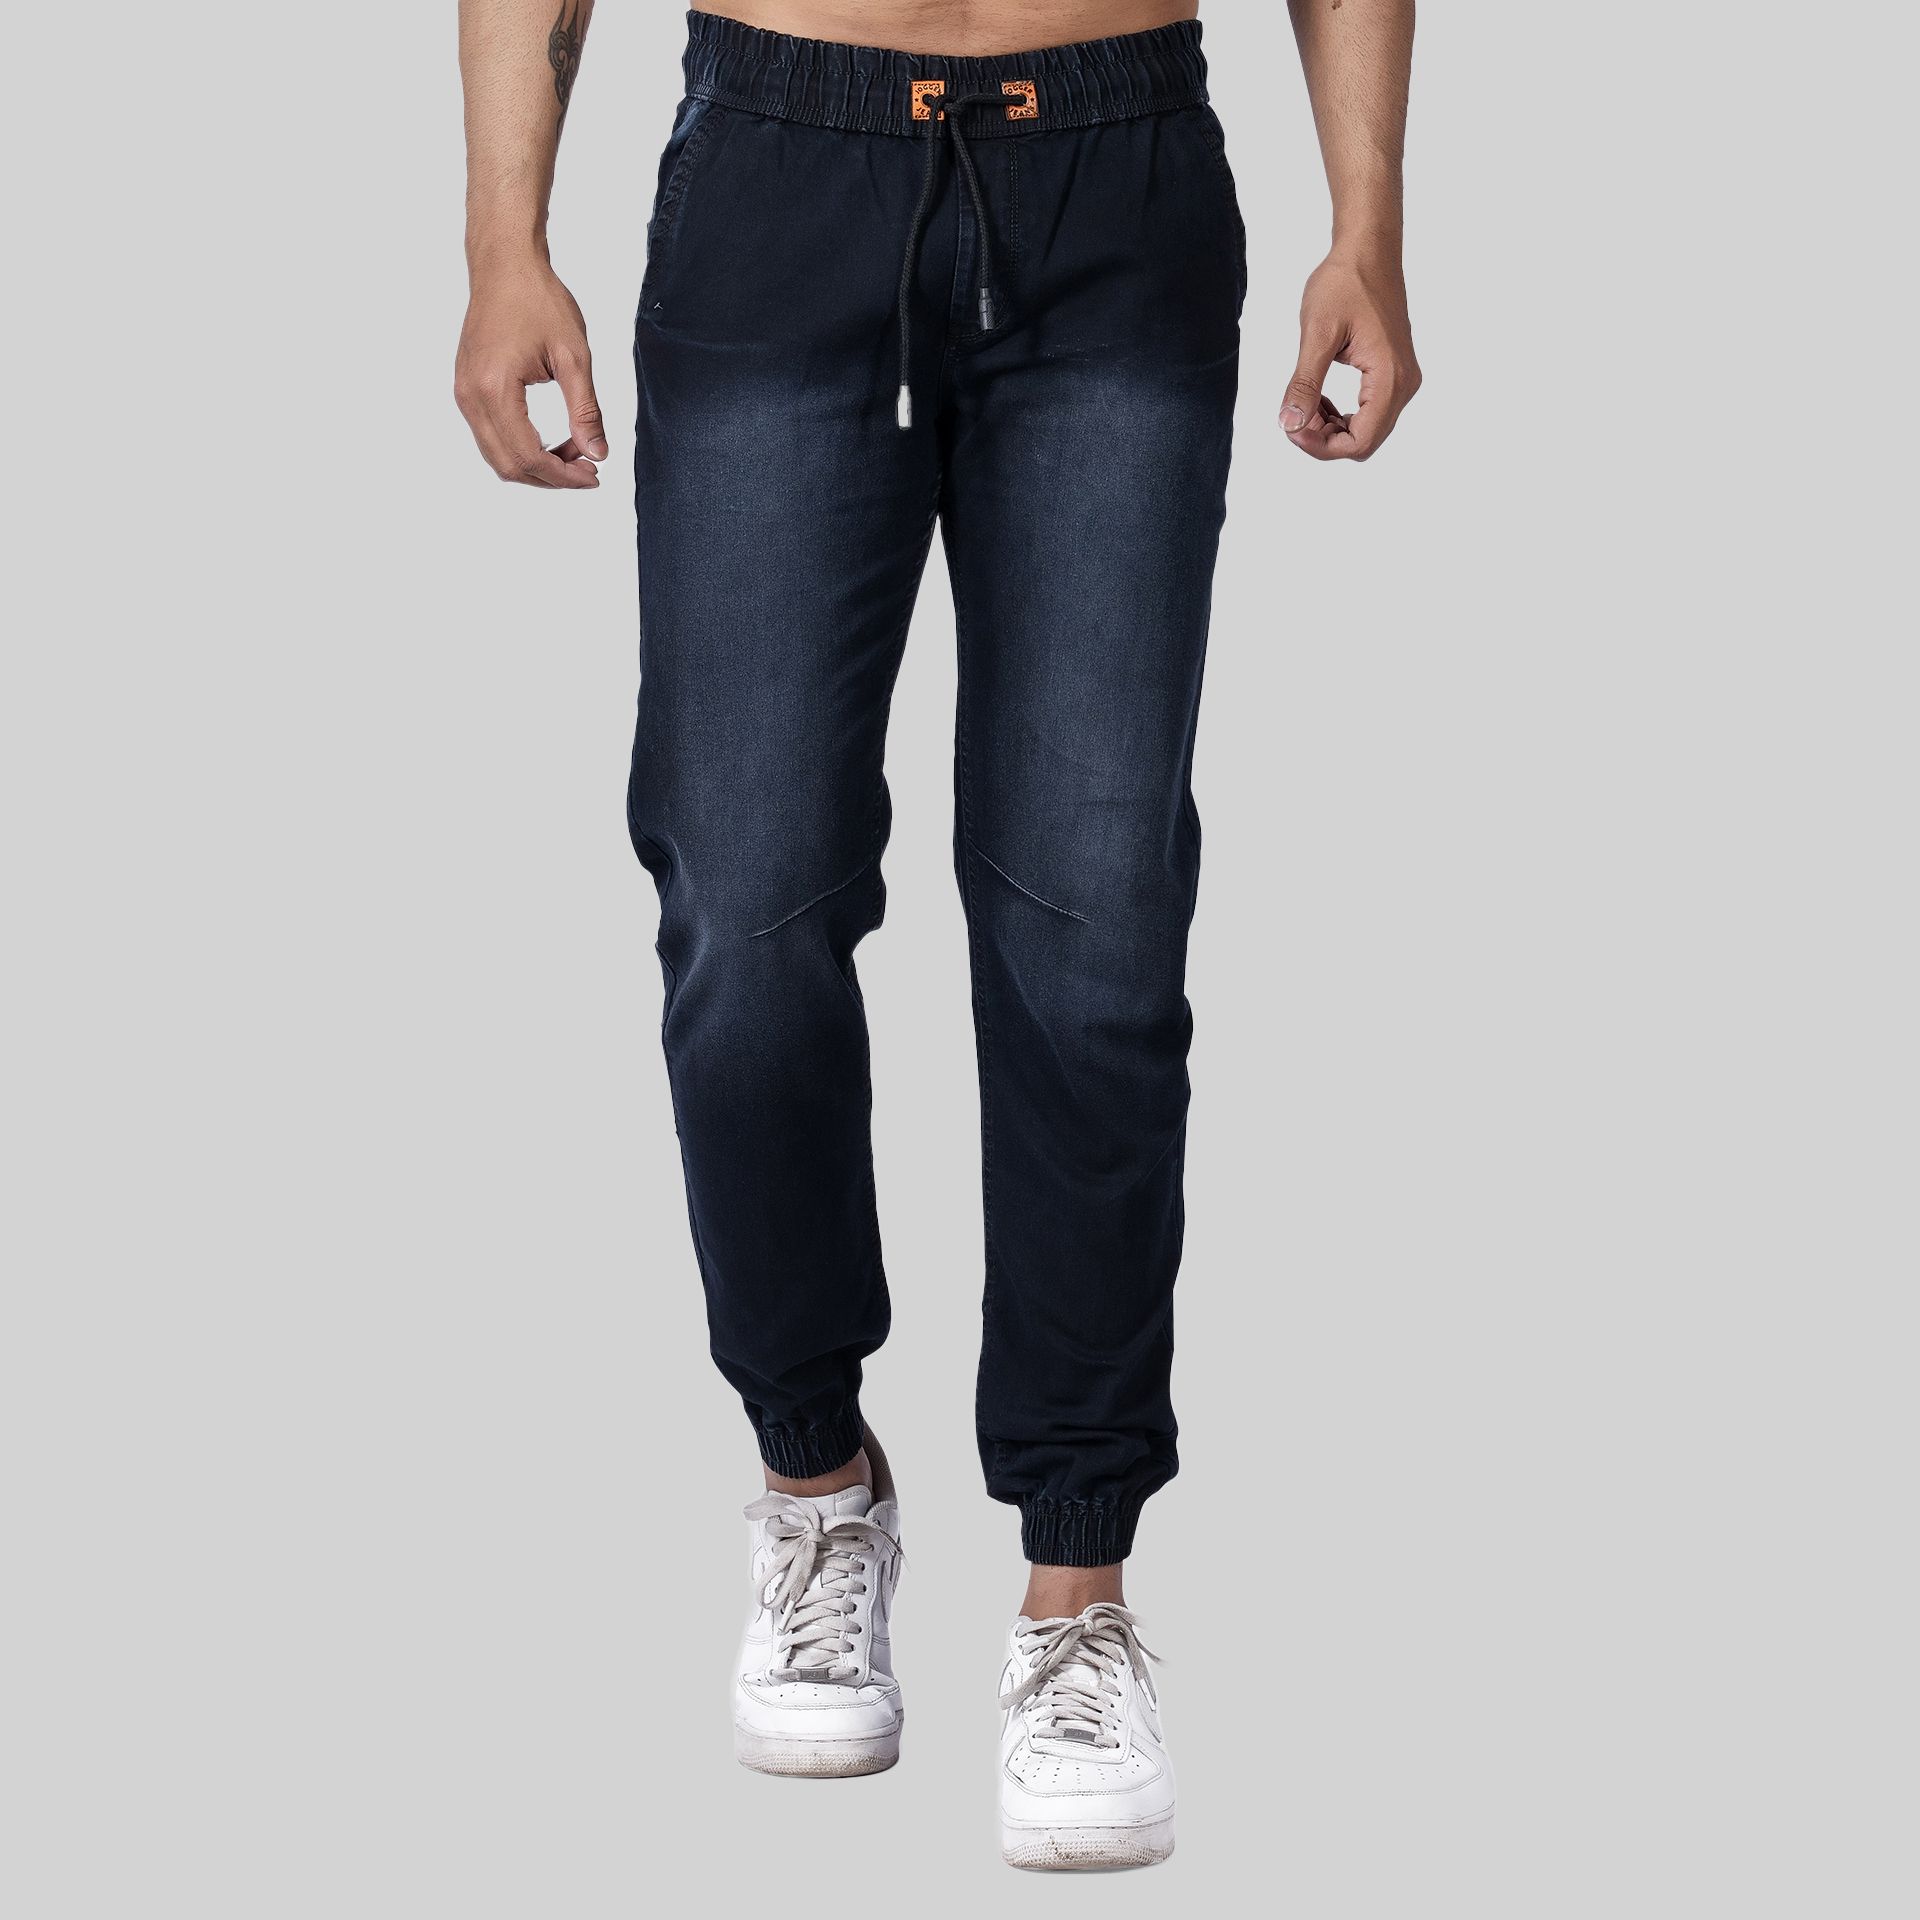     			Aflash - Black Denim Slim Fit Men's Jeans ( Pack of 1 )